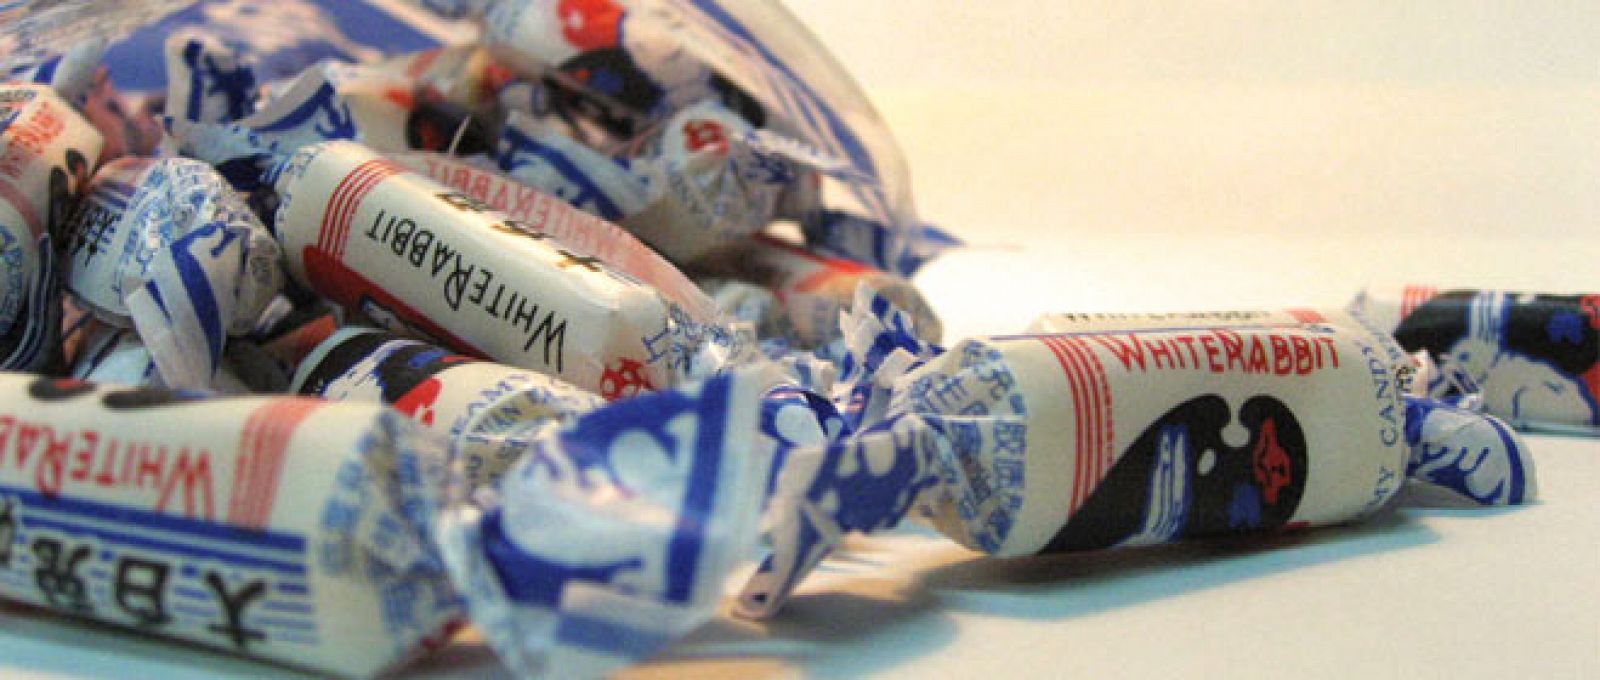 FACUA ha localizado en Sevilla los caramelos chinos 'White Rabbit', como los retirados en otros países por estar contaminados con melamina.